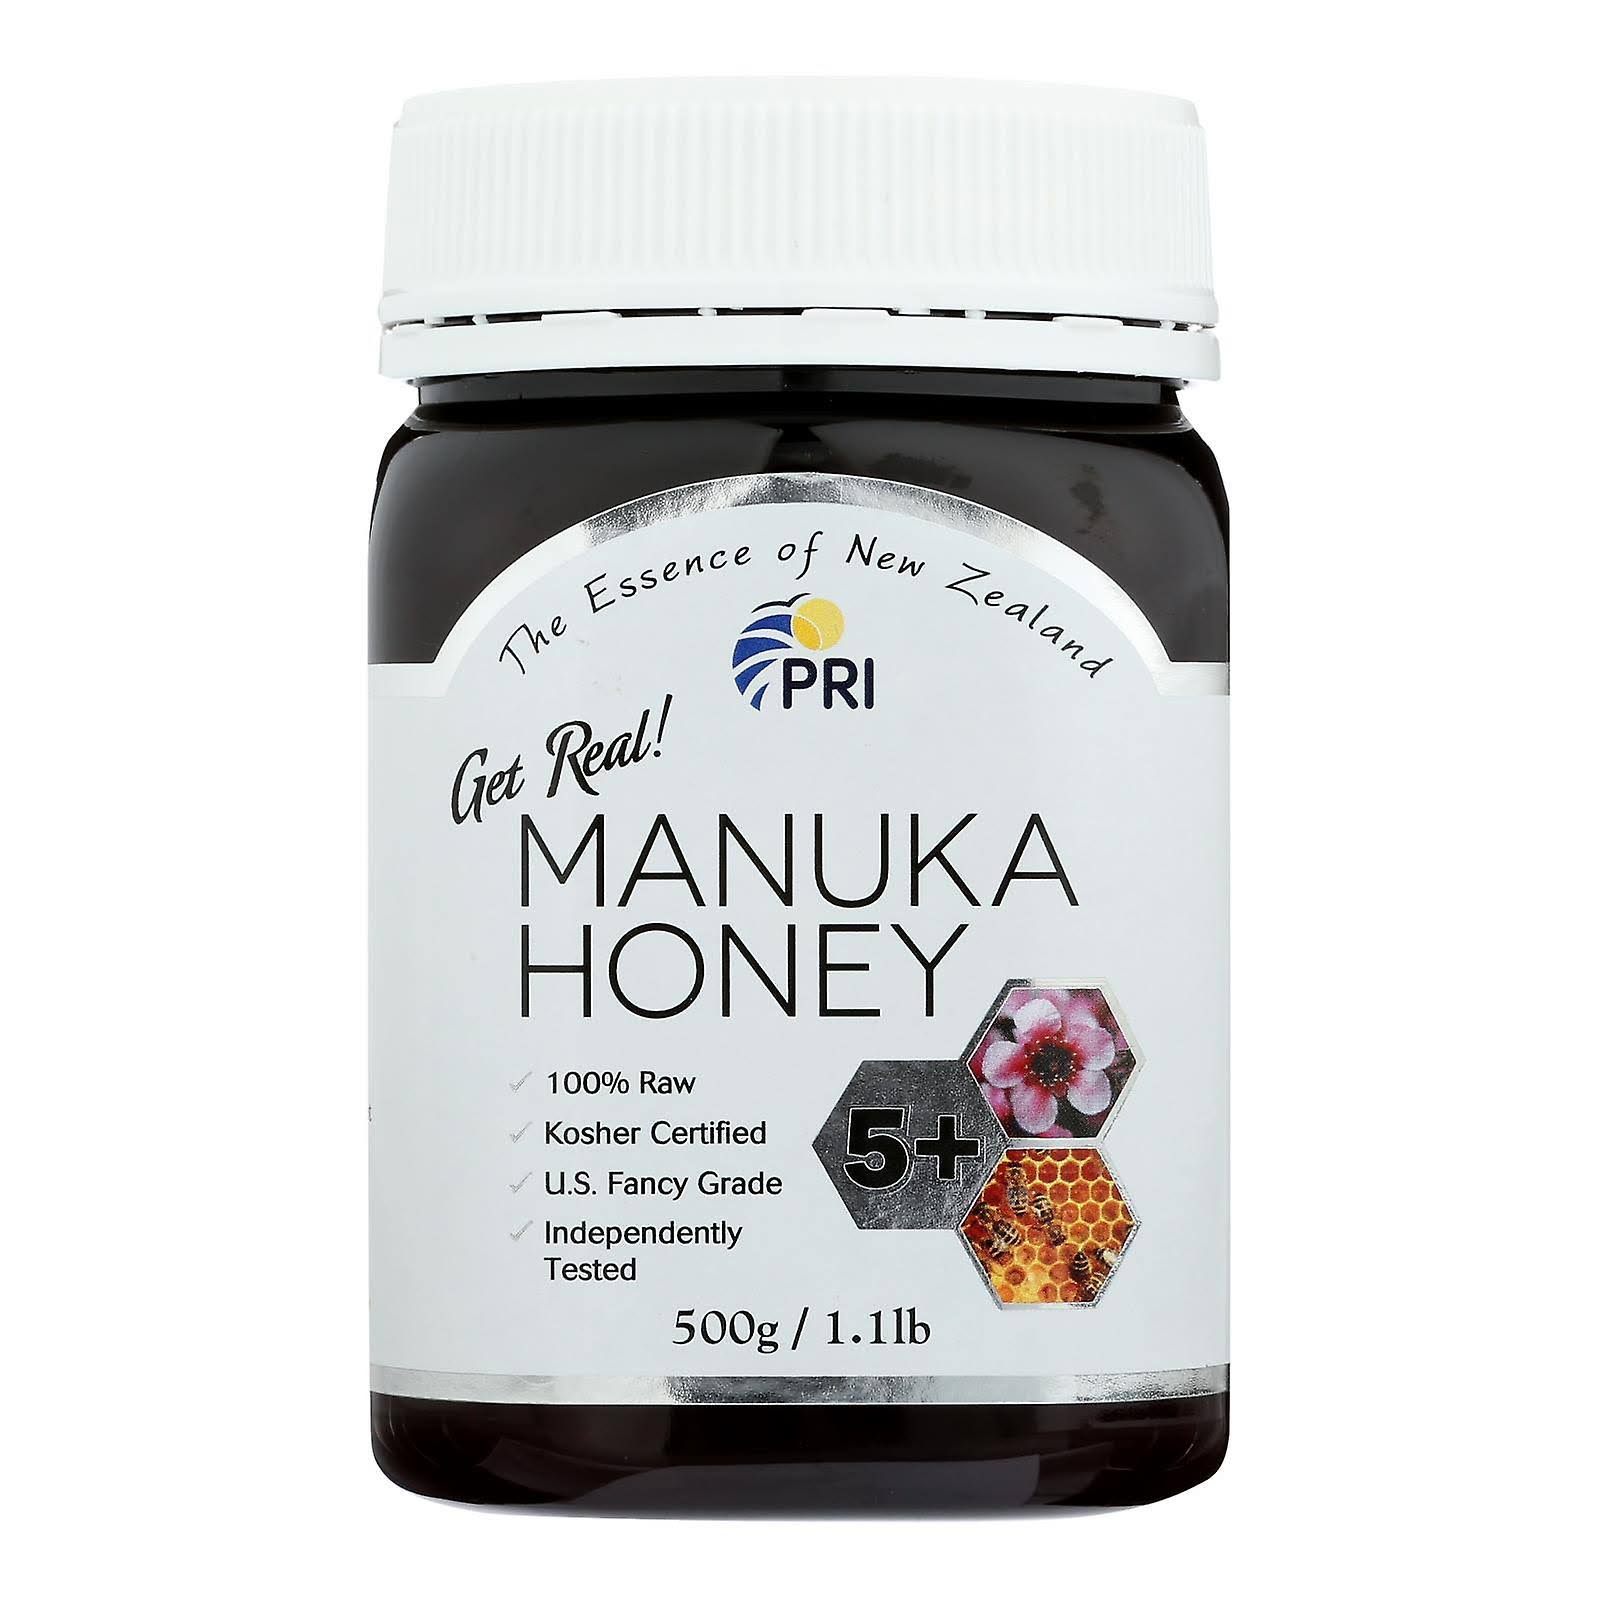 Manuka Honey Bio Active 5 Jar - 1.1lb